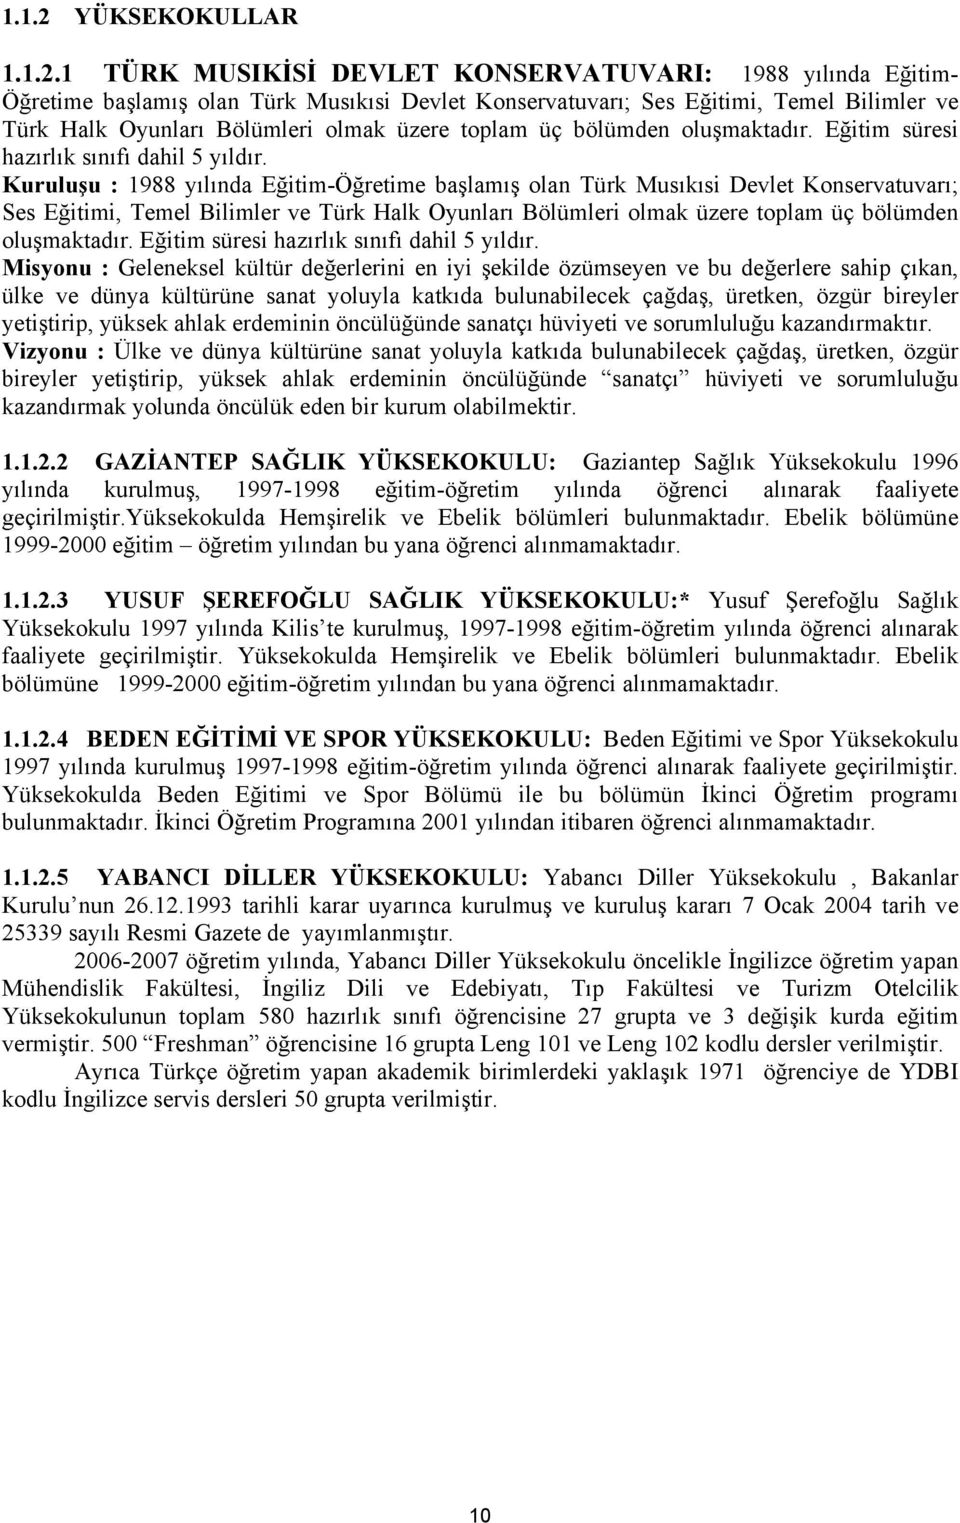 1 TÜRK MUSIKİSİ DEVLET KONSERVATUVARI: 1988 yılında Eğitim- Öğretime başlamış olan Türk Musıkısi Devlet Konservatuvarı; Ses Eğitimi, Temel Bilimler ve Türk Halk Oyunları Bölümleri olmak üzere toplam